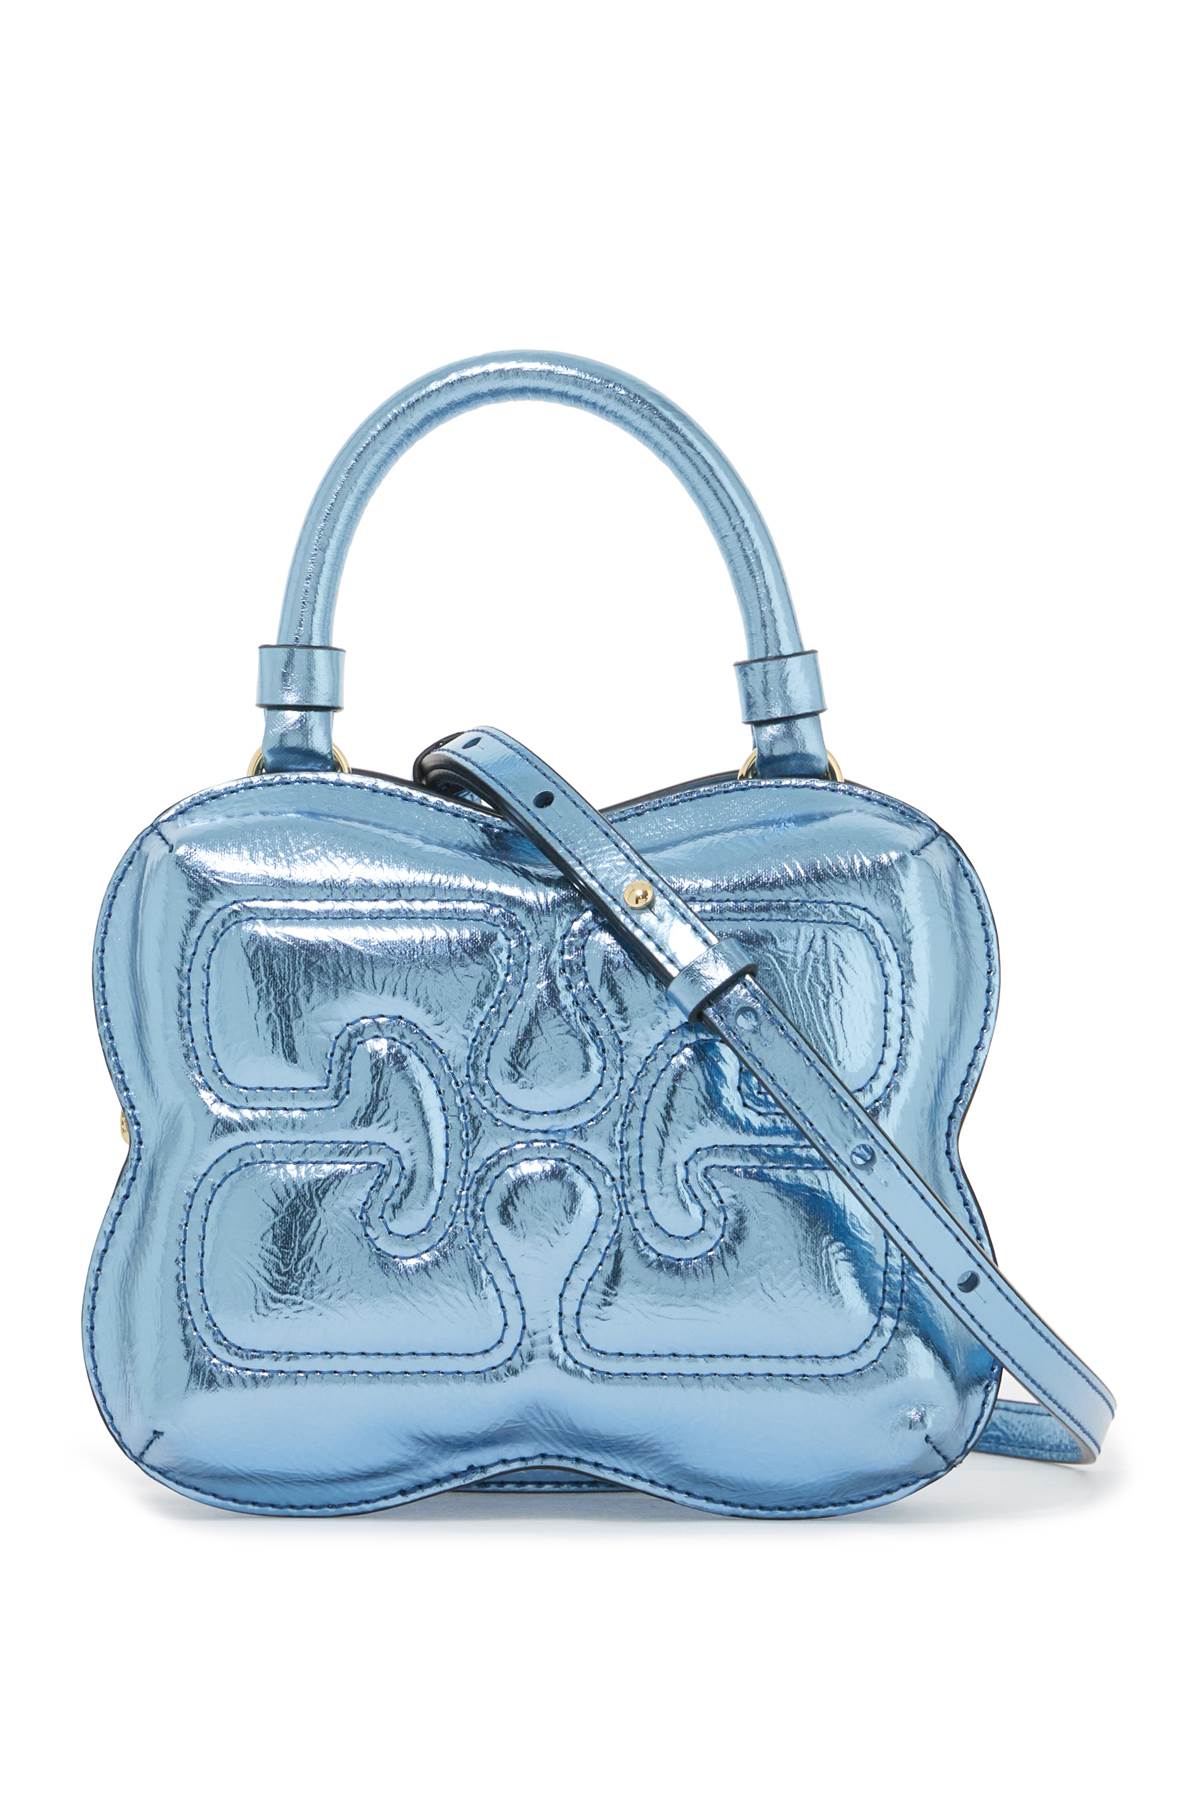 butterfly handbag A5926 BLUE CURACAO